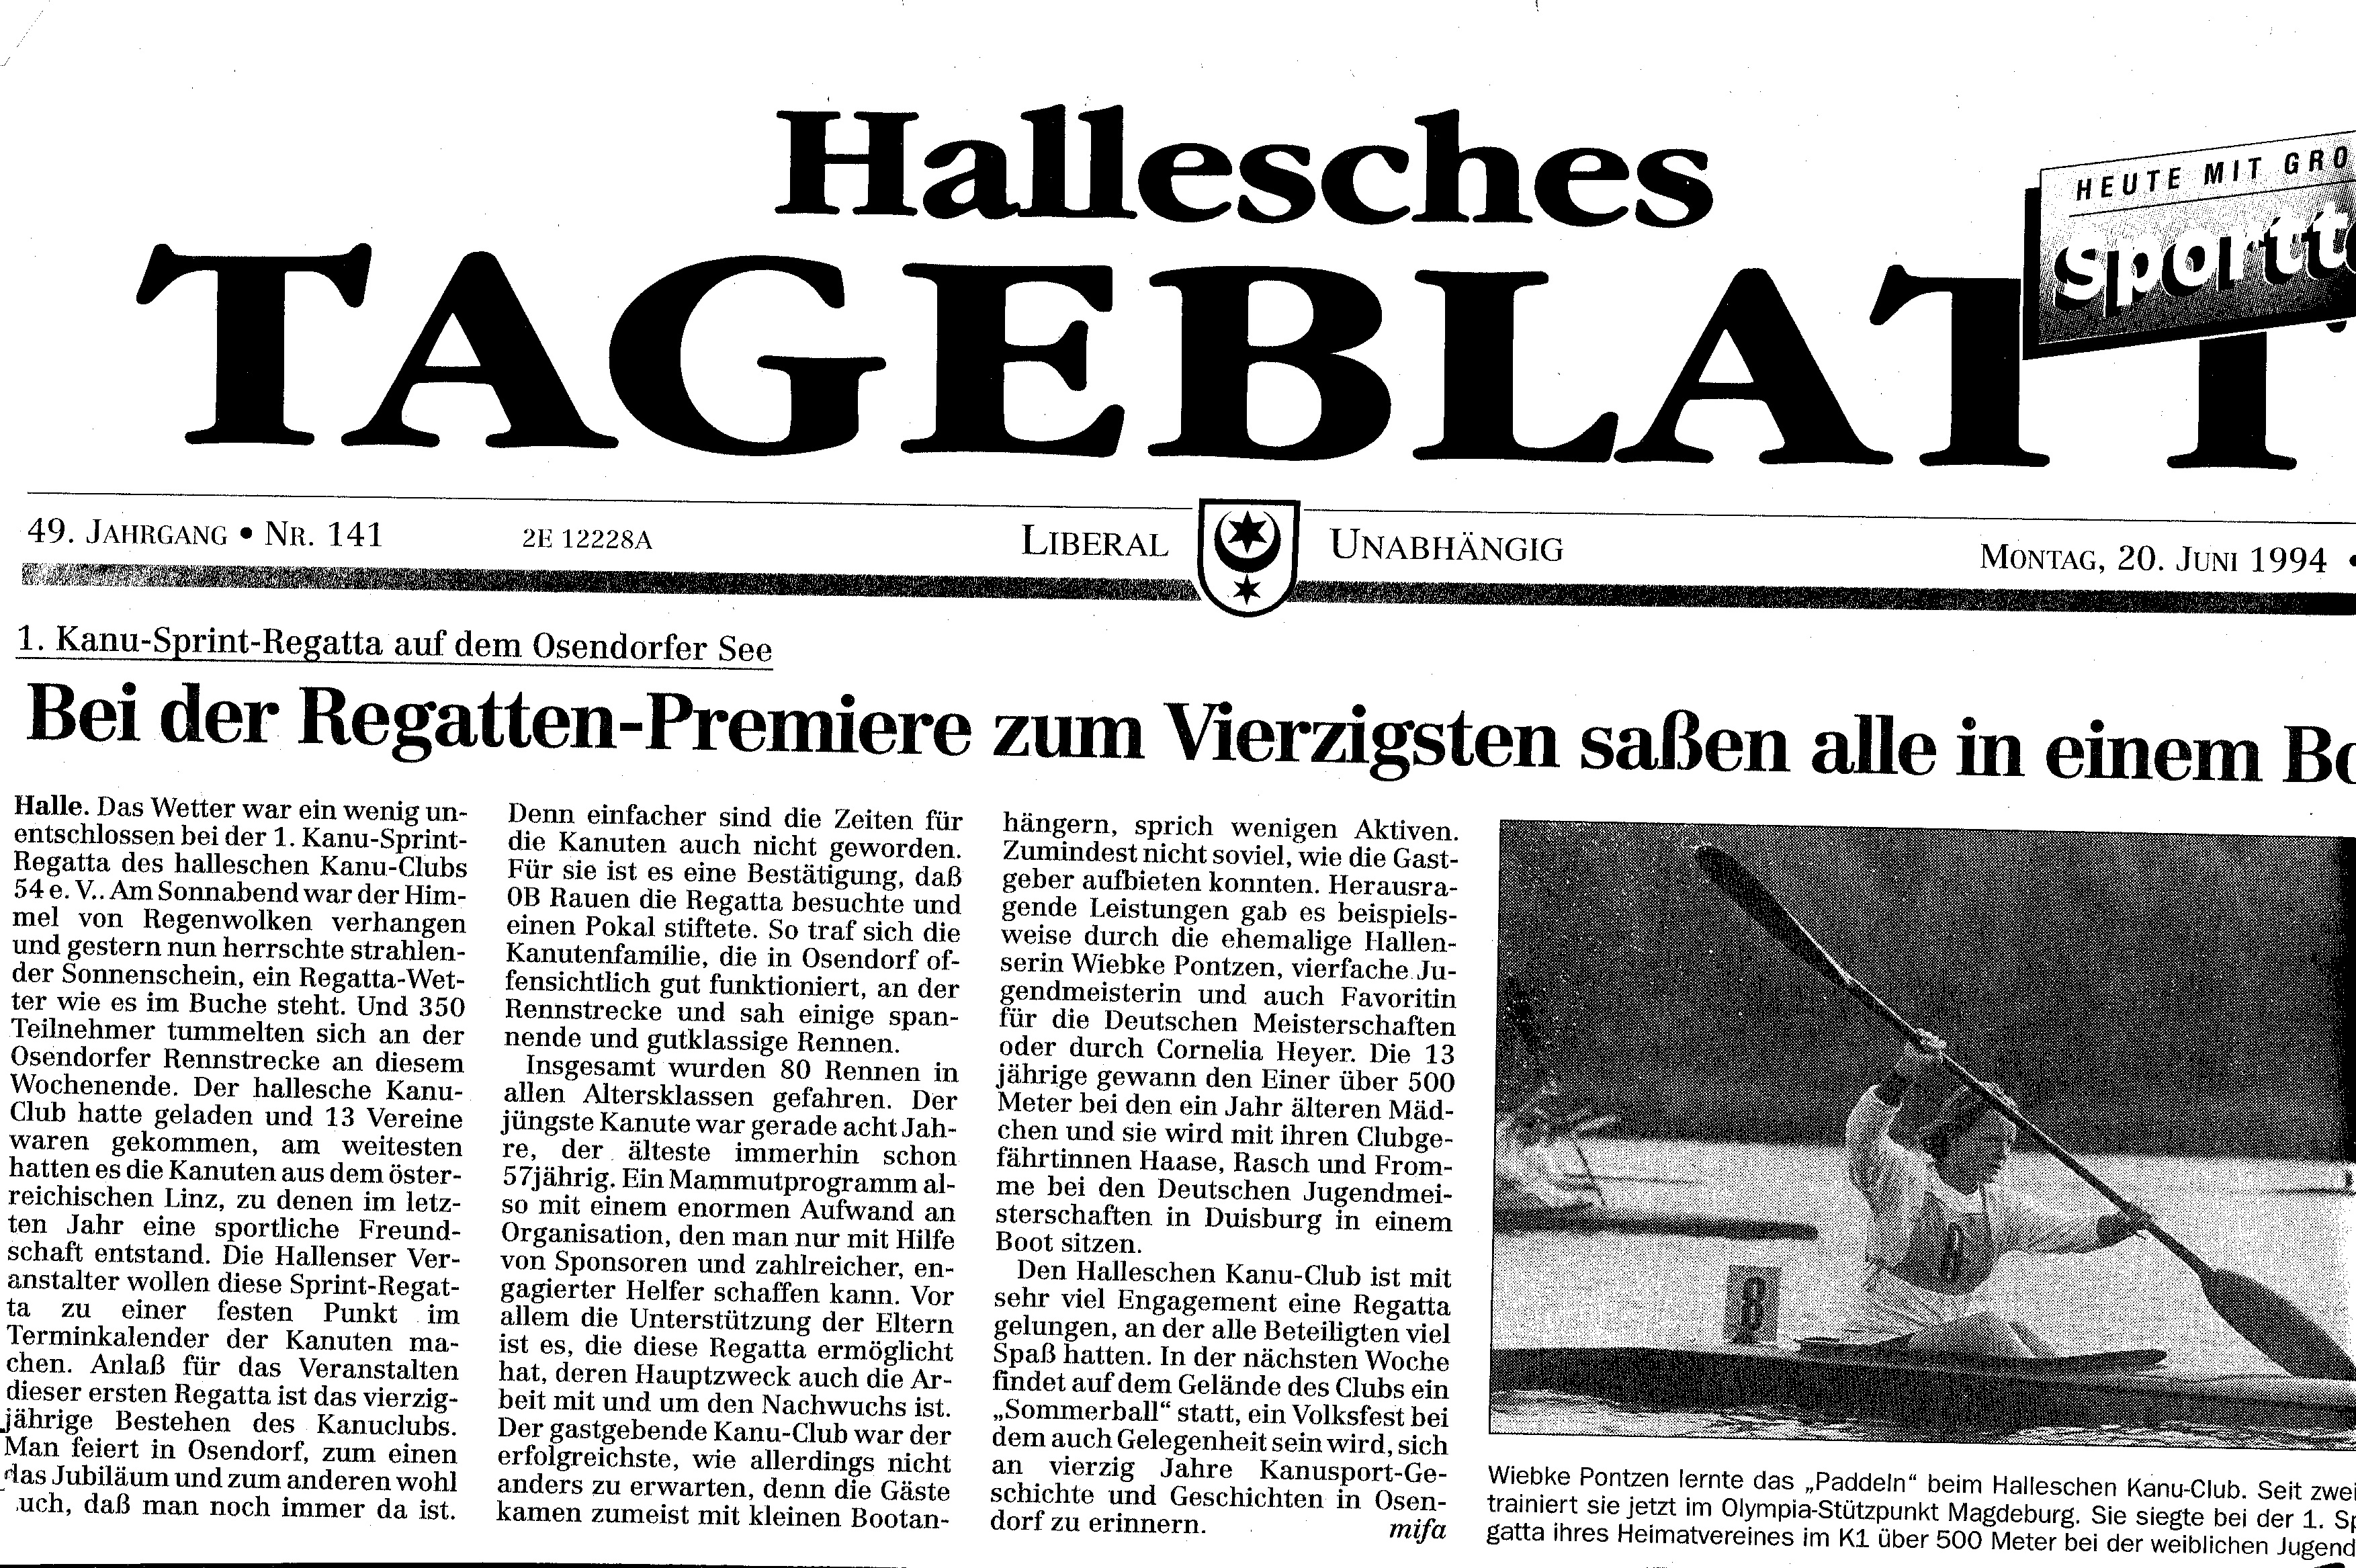 1994-06-20 Hallesches Tageblatt 1. Kanu Sprintregatta, bei Regatta Premiere zum Vierzigsten saßen alle in einem Boot